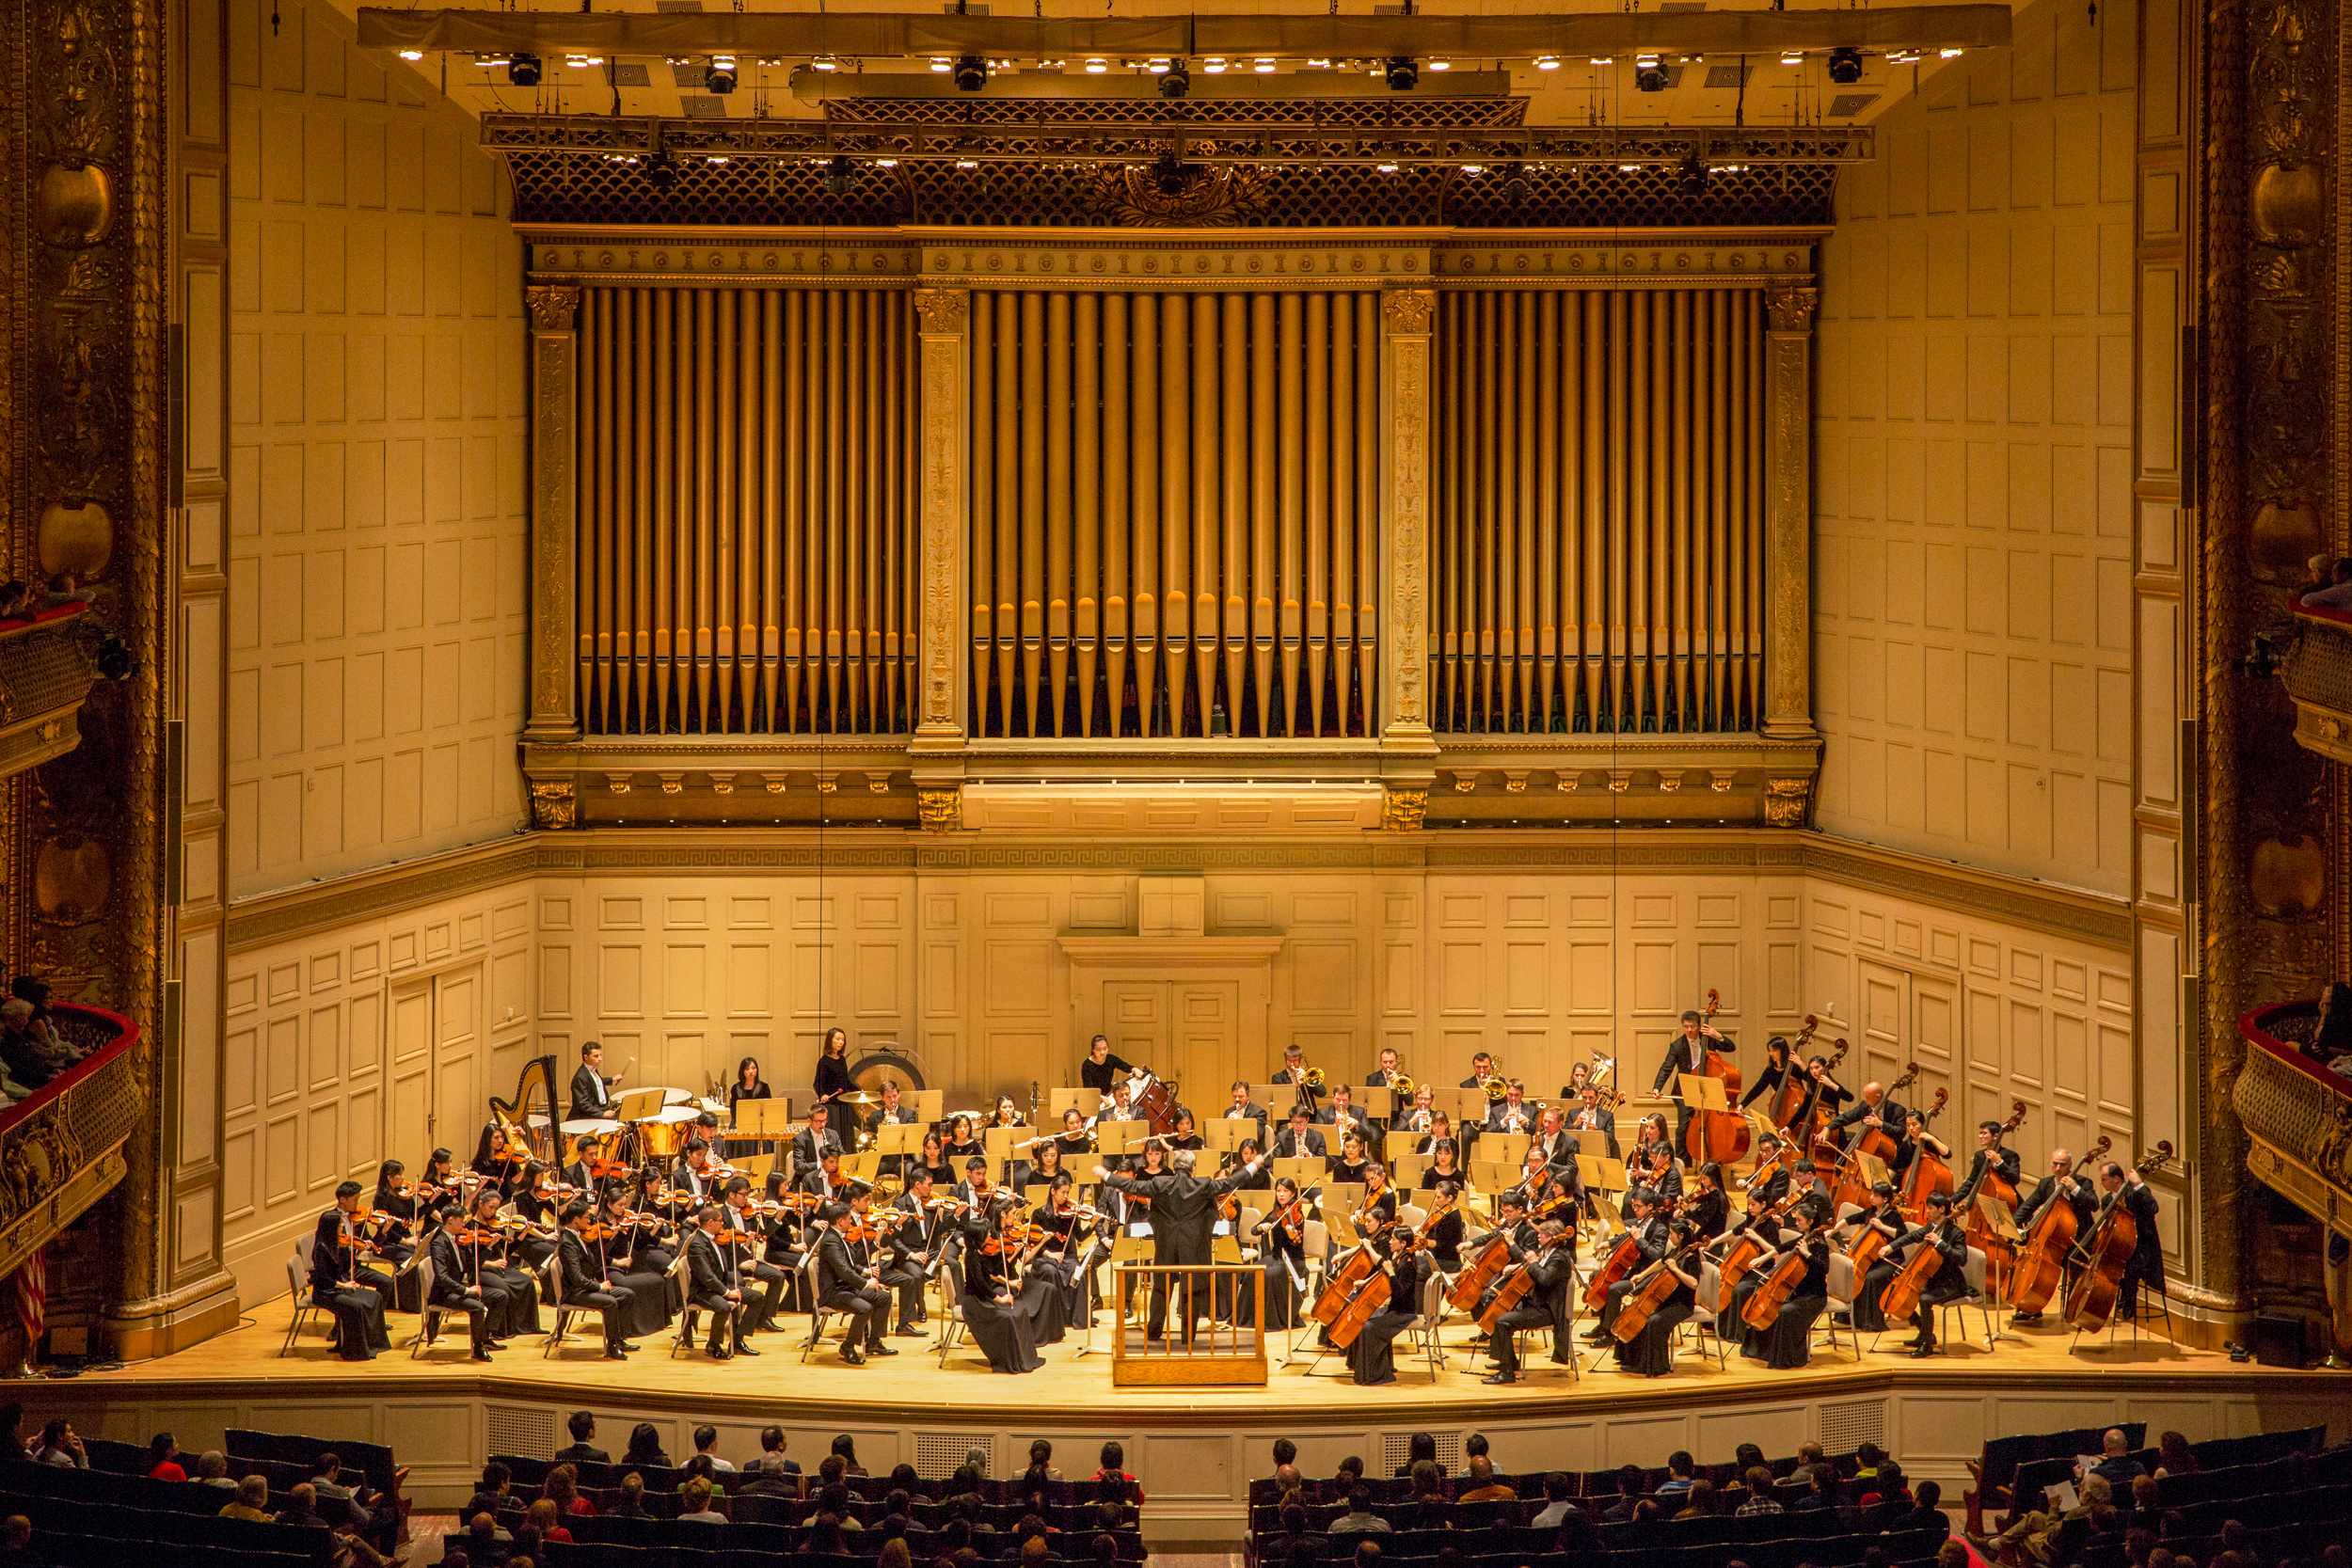 Âm nhạc cổ điển có thể cải thiện chức năng não và giảm căng thẳng. Âm nhạc cũng có thể gợi lên cảm giác thiêng liêng, truyền cảm hứng về sự biết ơn và lòng tôn kính. Dàn nhạc Giao hưởng Shen Yun biểu diễn tại Nhà hát Giao hưởng Boston vào ngày 13/10/2018. (Ảnh: NTD Television)